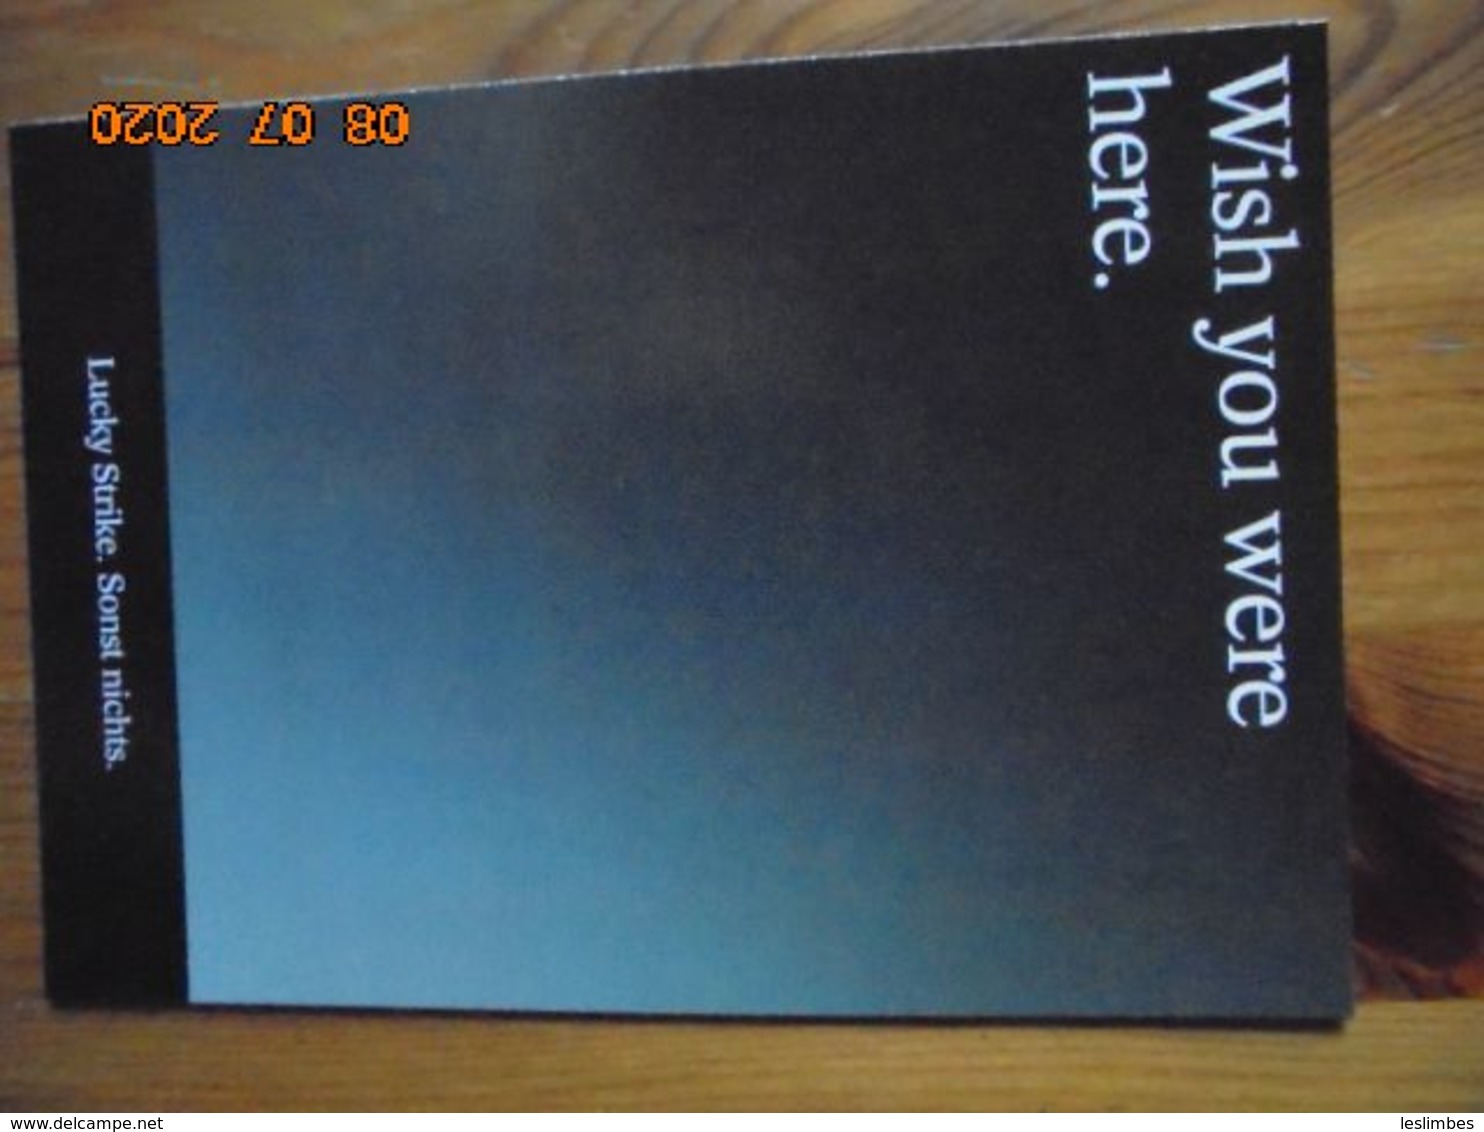 Carte Postale Publicitaire Allemand (Taschen 1996) 16,3 X 11,4 Cm. Lucky Strike. Sonst Nichts. "Wish You Were Here" 1994 - Objetos Publicitarios